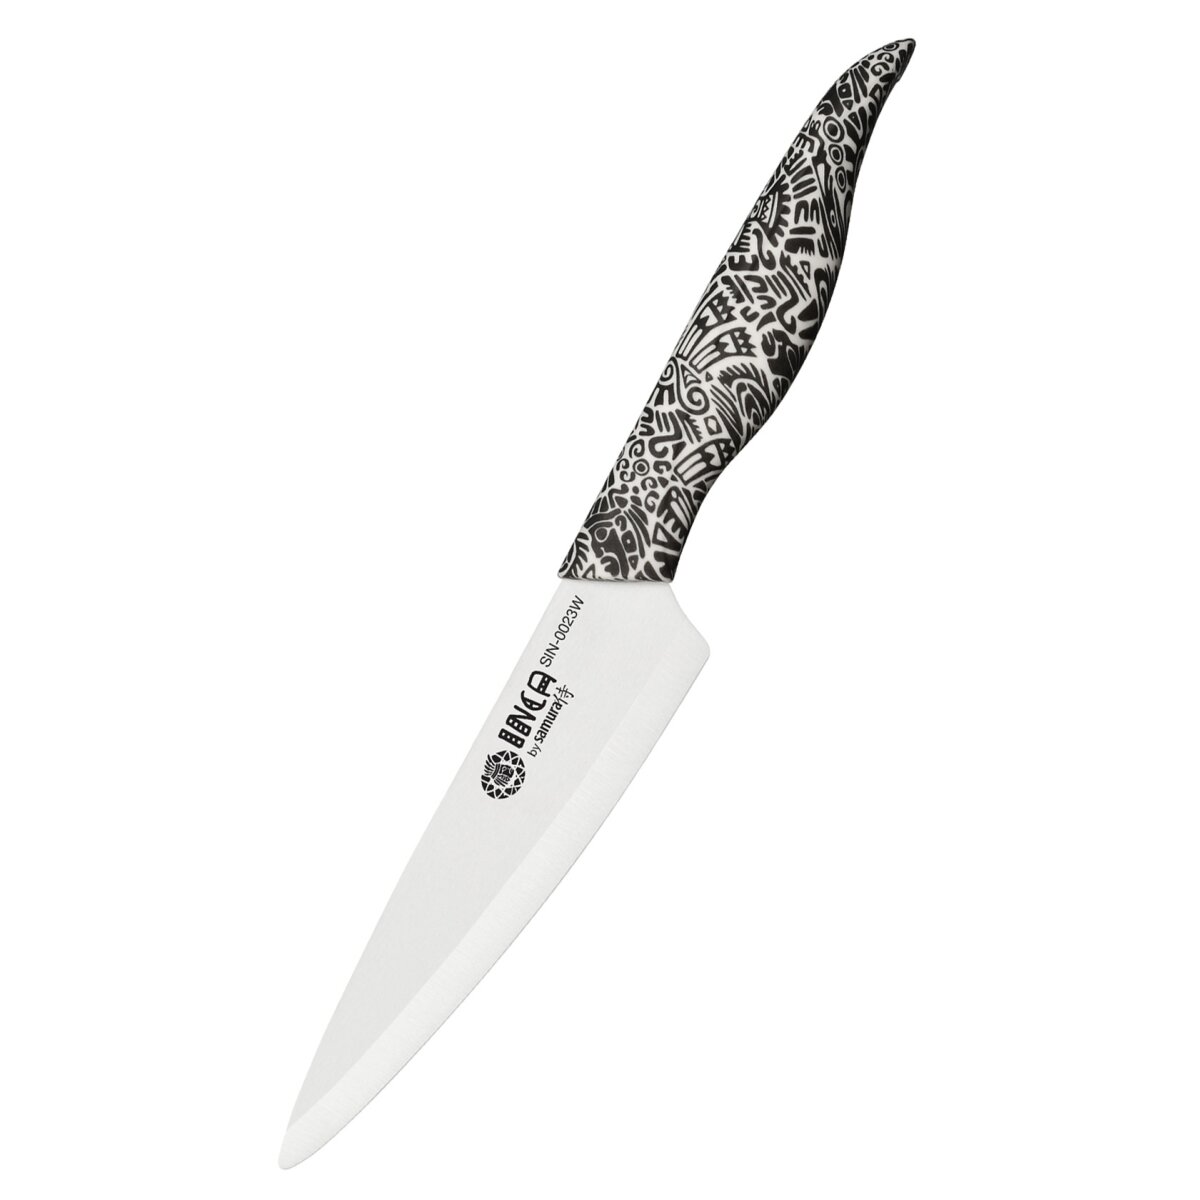 Samura INCA utility knife, ceramic knife